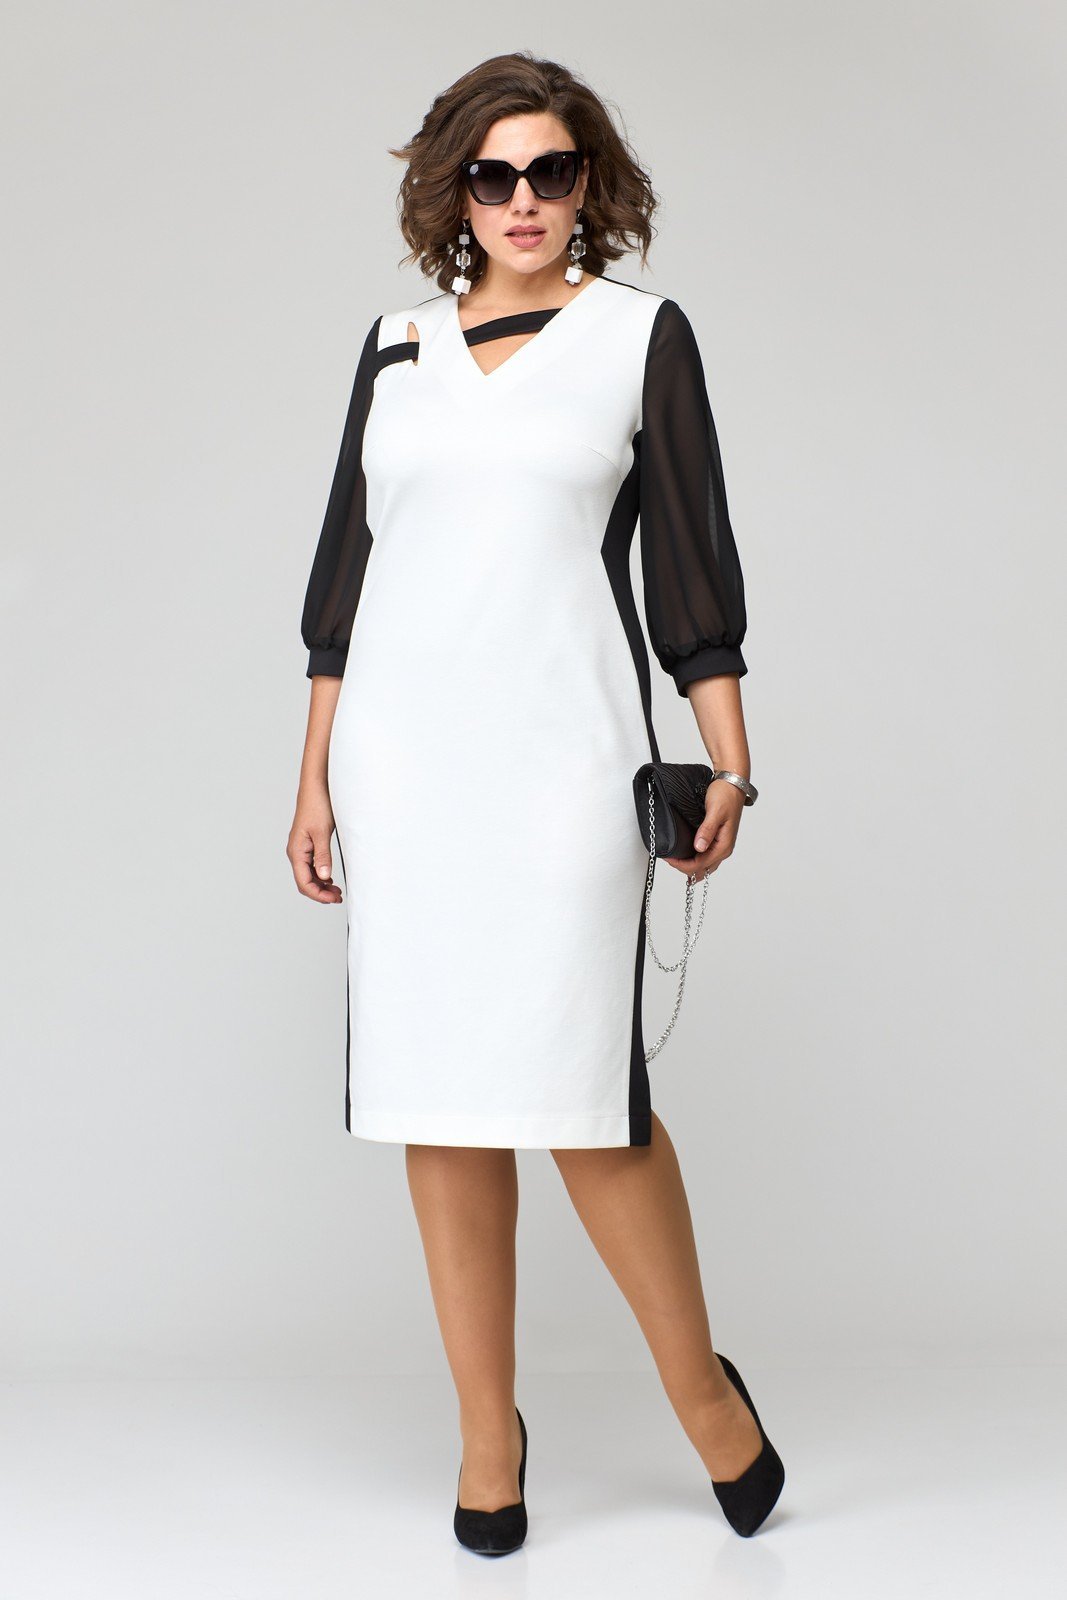 Платье трикотажное с открытыми плечами и рукавами в клетку черно-белое